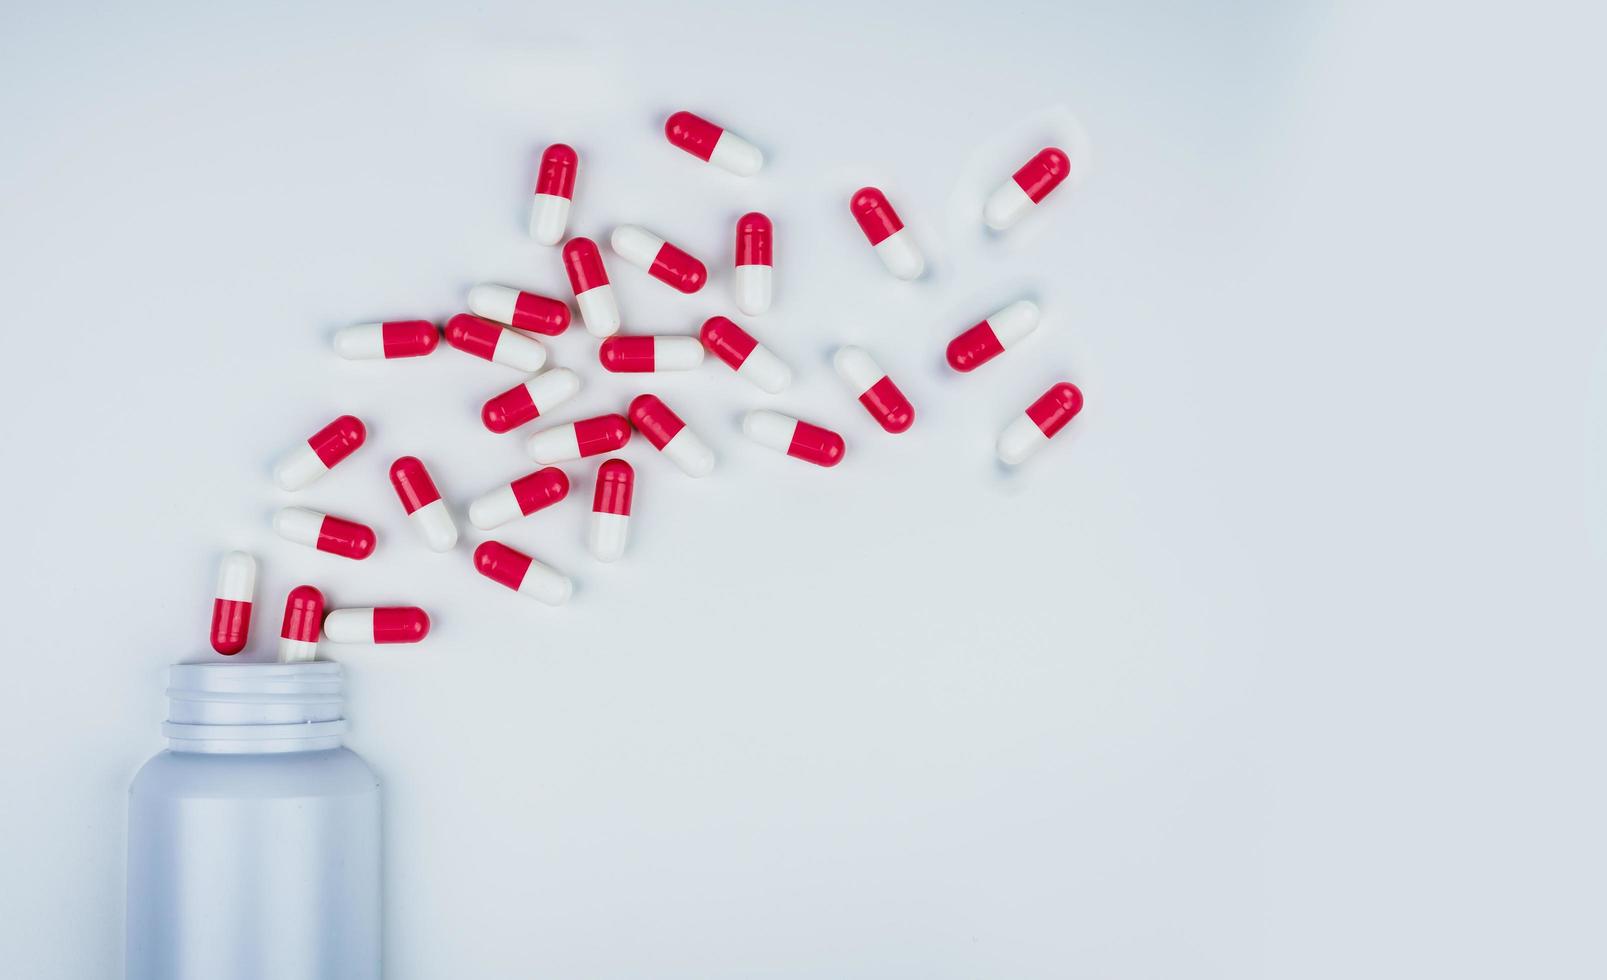 röd-vita antibiotikakapselpiller utspridda ur vit plastflaska. antibiotikaresistenskoncept. användning av antibiotika. global sjukvård. apotek bakgrund. läkemedelsindustri. foto